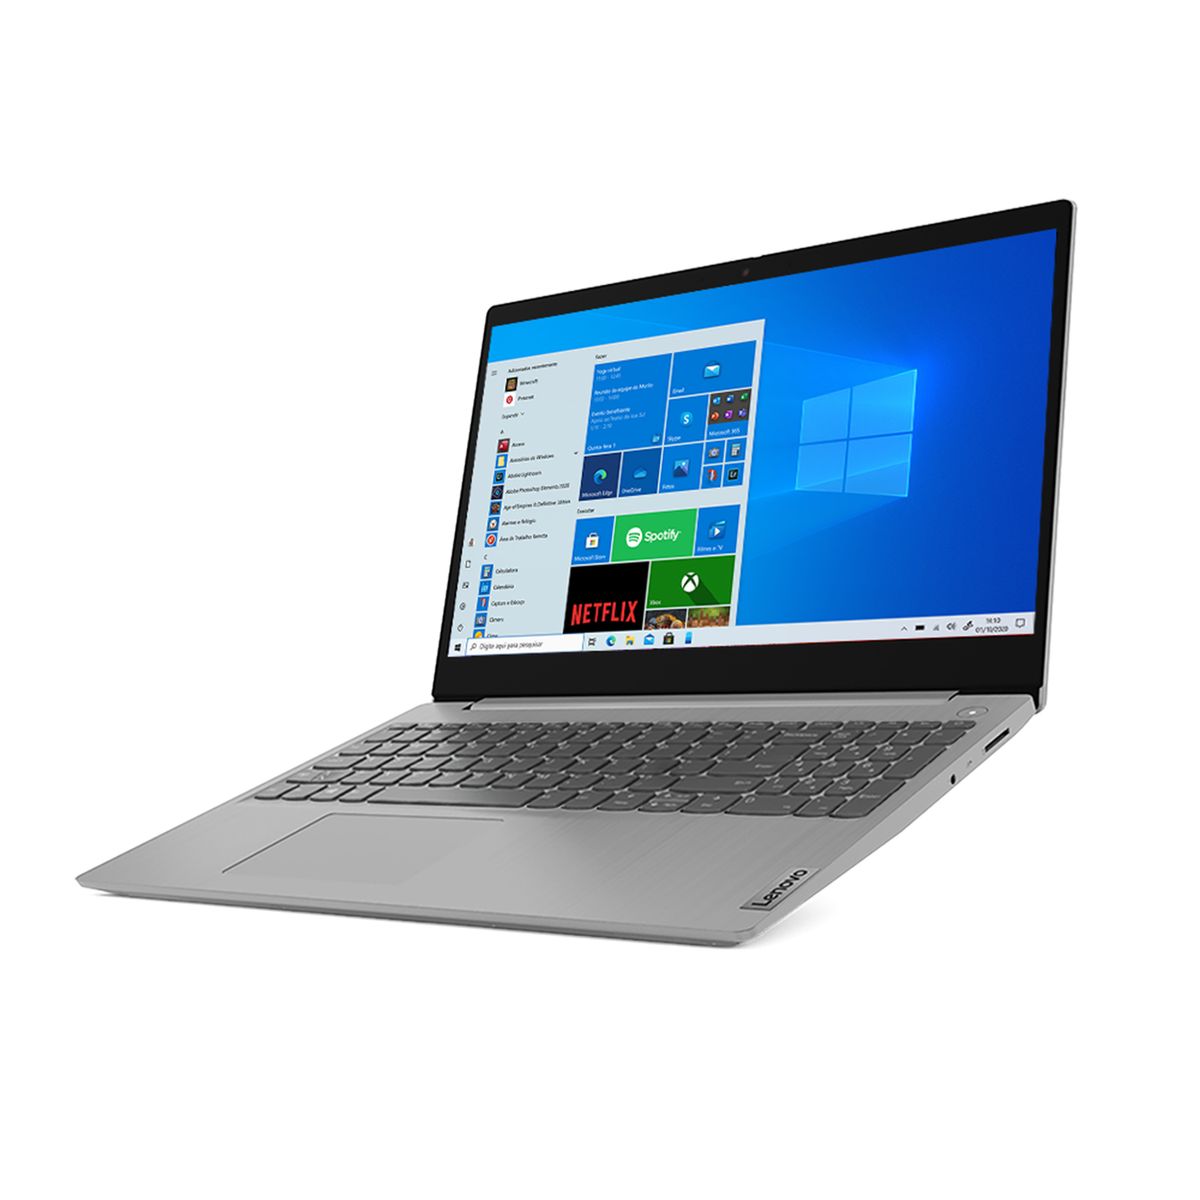 Notebook - Lenovo 82bs0002br I3-10110u 2.10ghz 4gb 1tb Padrão Intel Hd Graphics 600 Windows 10 Home Ideapad 3i 15,6" Polegadas